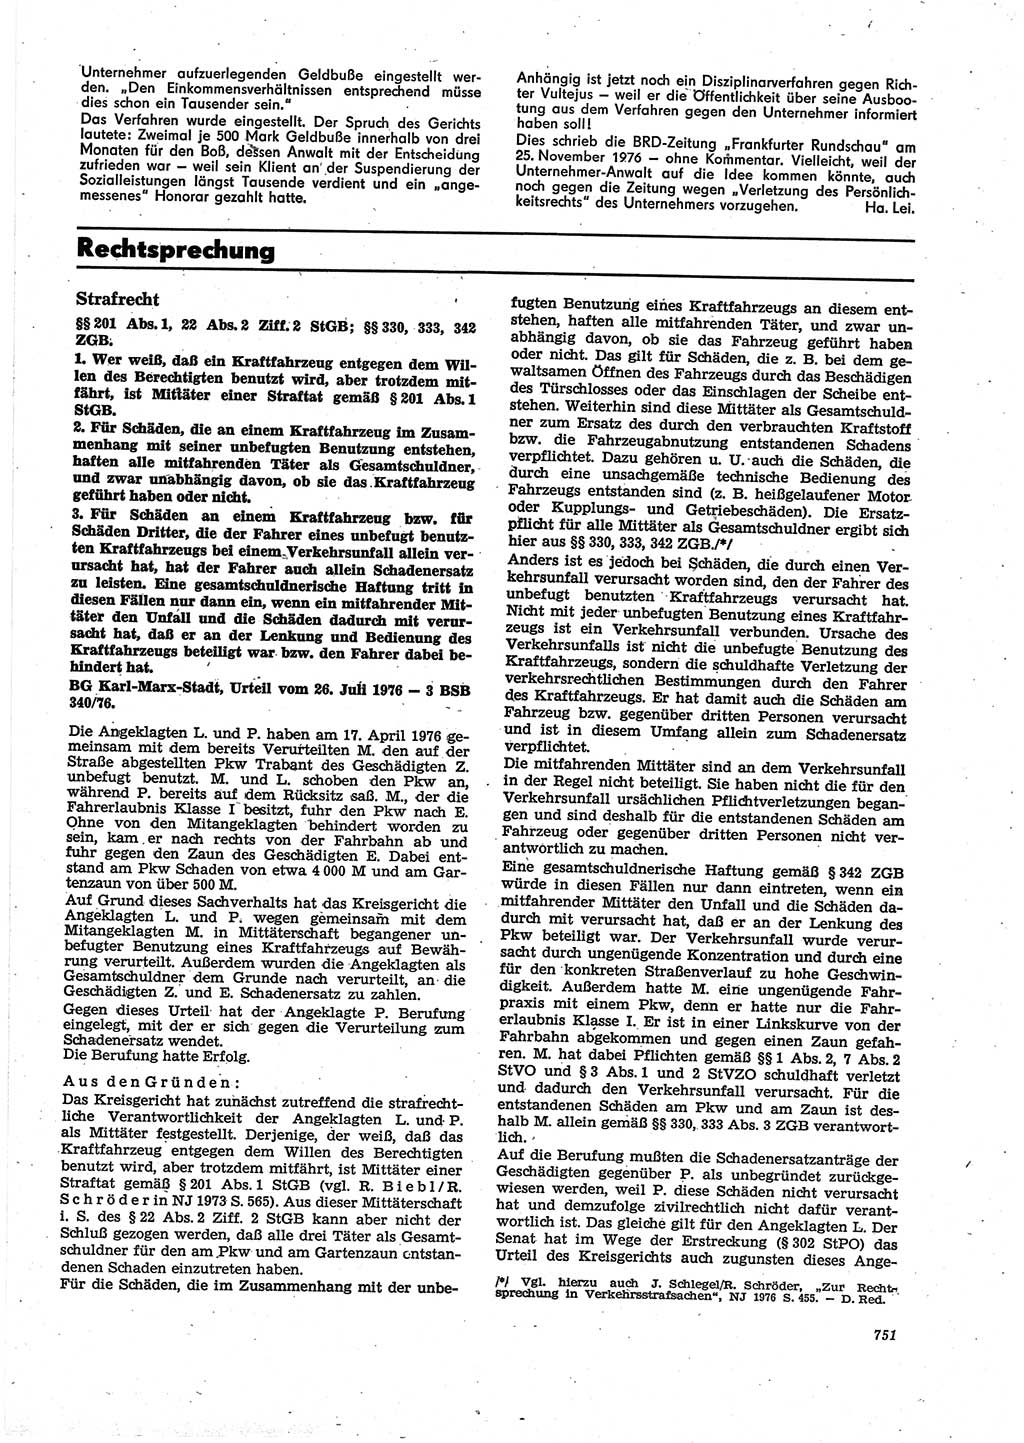 Neue Justiz (NJ), Zeitschrift für Recht und Rechtswissenschaft [Deutsche Demokratische Republik (DDR)], 30. Jahrgang 1976, Seite 751 (NJ DDR 1976, S. 751)